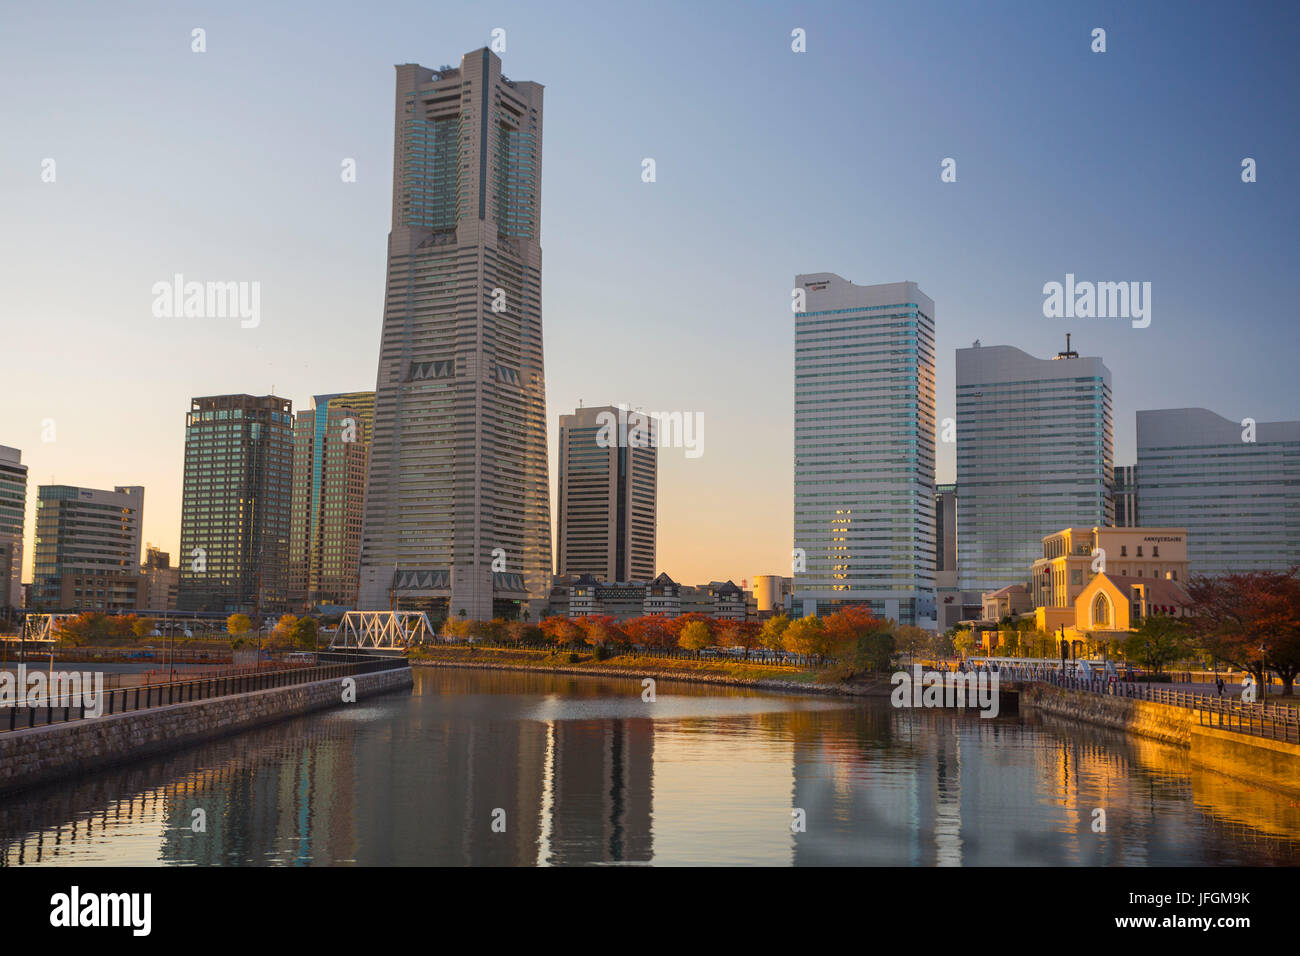 Japan, Yokohama City, Yokohama Skyline, Landmark Building Stock Photo